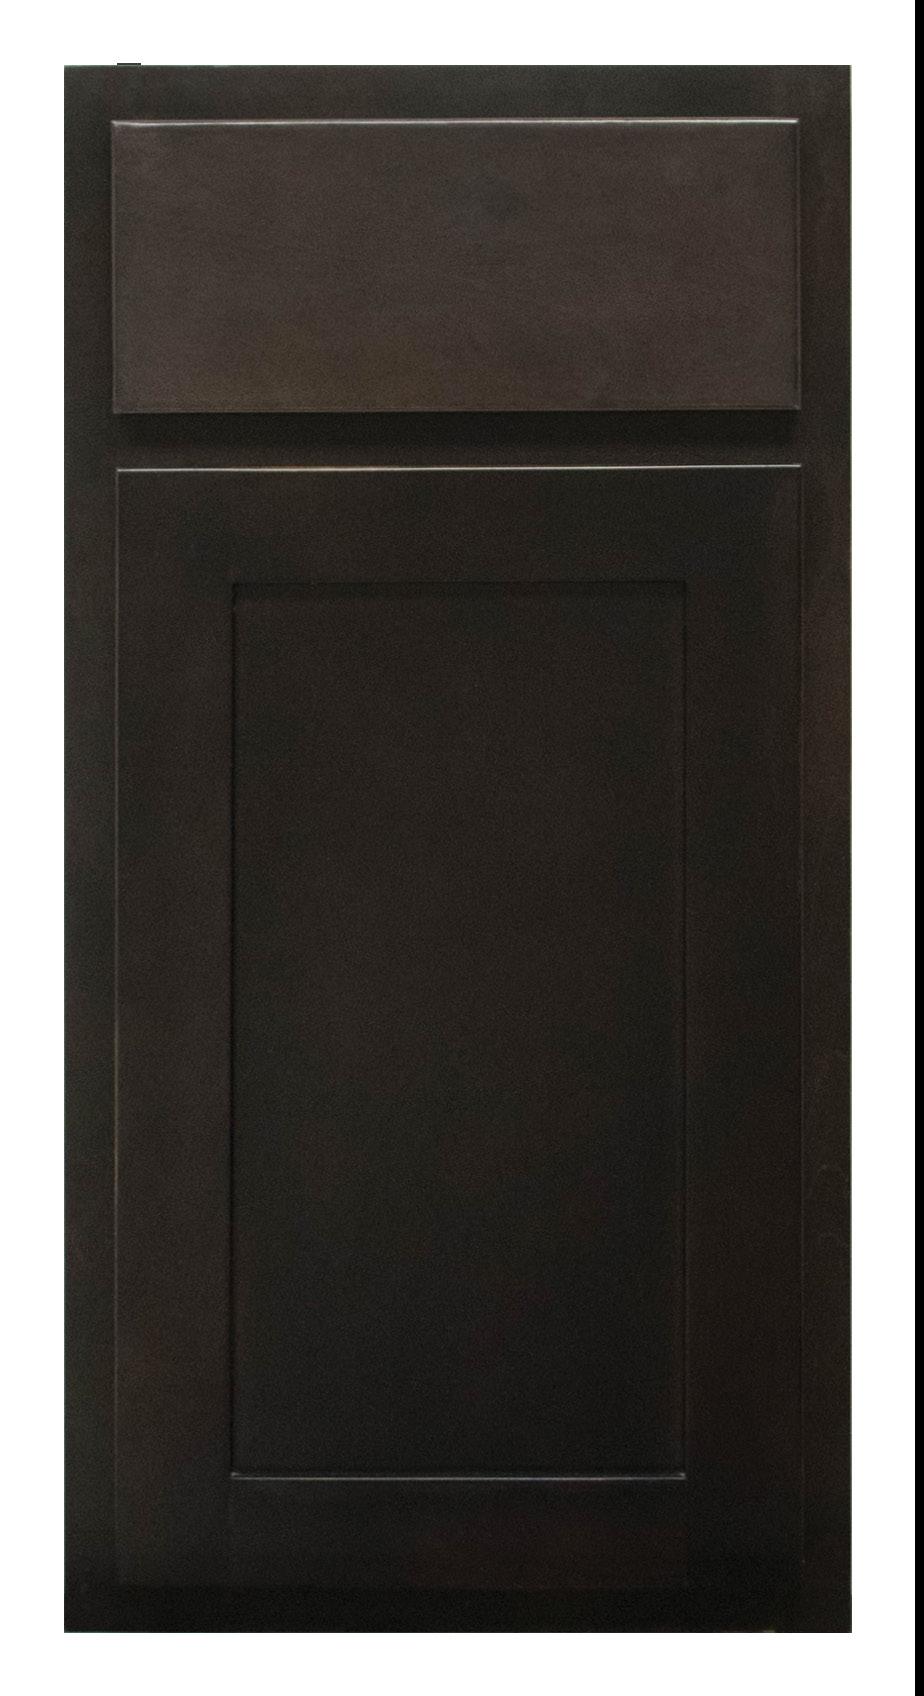 DOOR STYLES DOOR CONSTRUCTION KEY Indicates solid wood Indicates veneered MDF Indicates veneered plywood Brentwood Order Code: DOOR